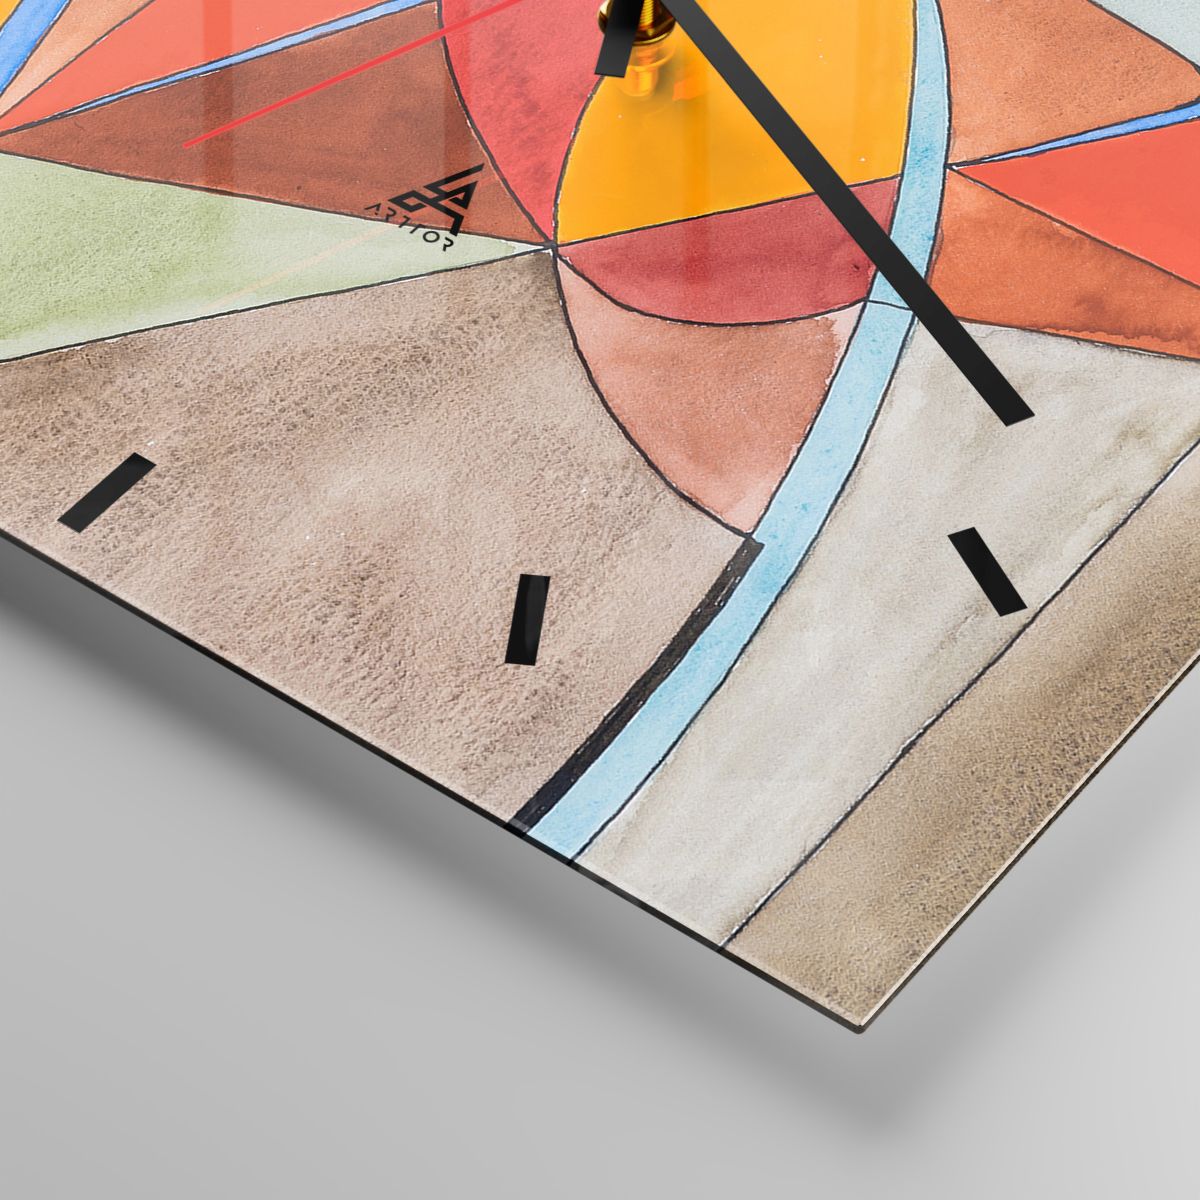 Orologio da parete Arttor - Carosello, carosello dei sogni - Quadrante con  trattini, Forma: Quadrato - 30x30 cm - Astrazione, Arte, Modello Moderno